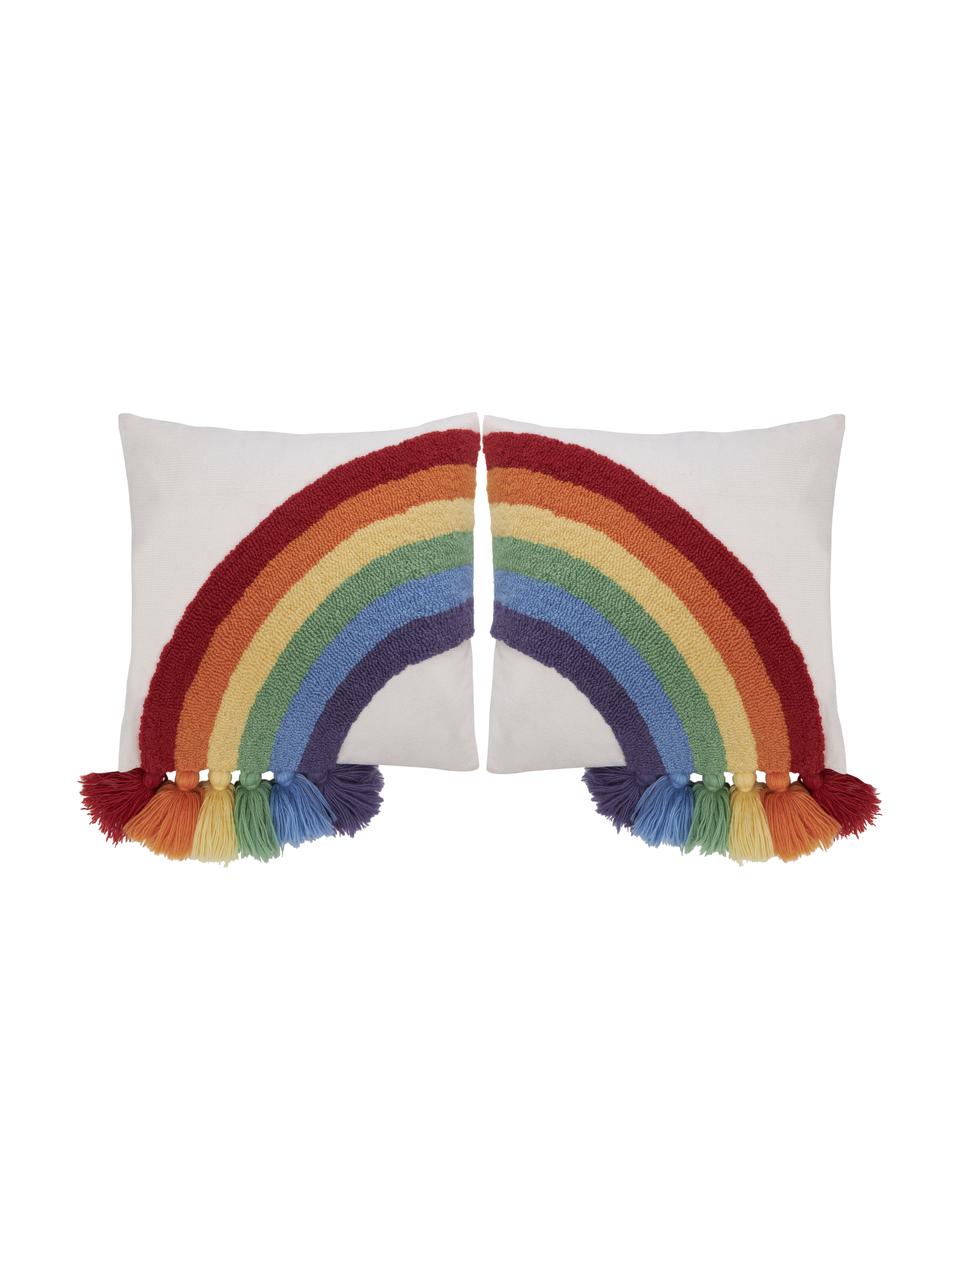 Kussenhoezen Cary met regenboog en kwastjes in multicolour, set van 2, Wit, multicolour, B 45 x L 45 cm